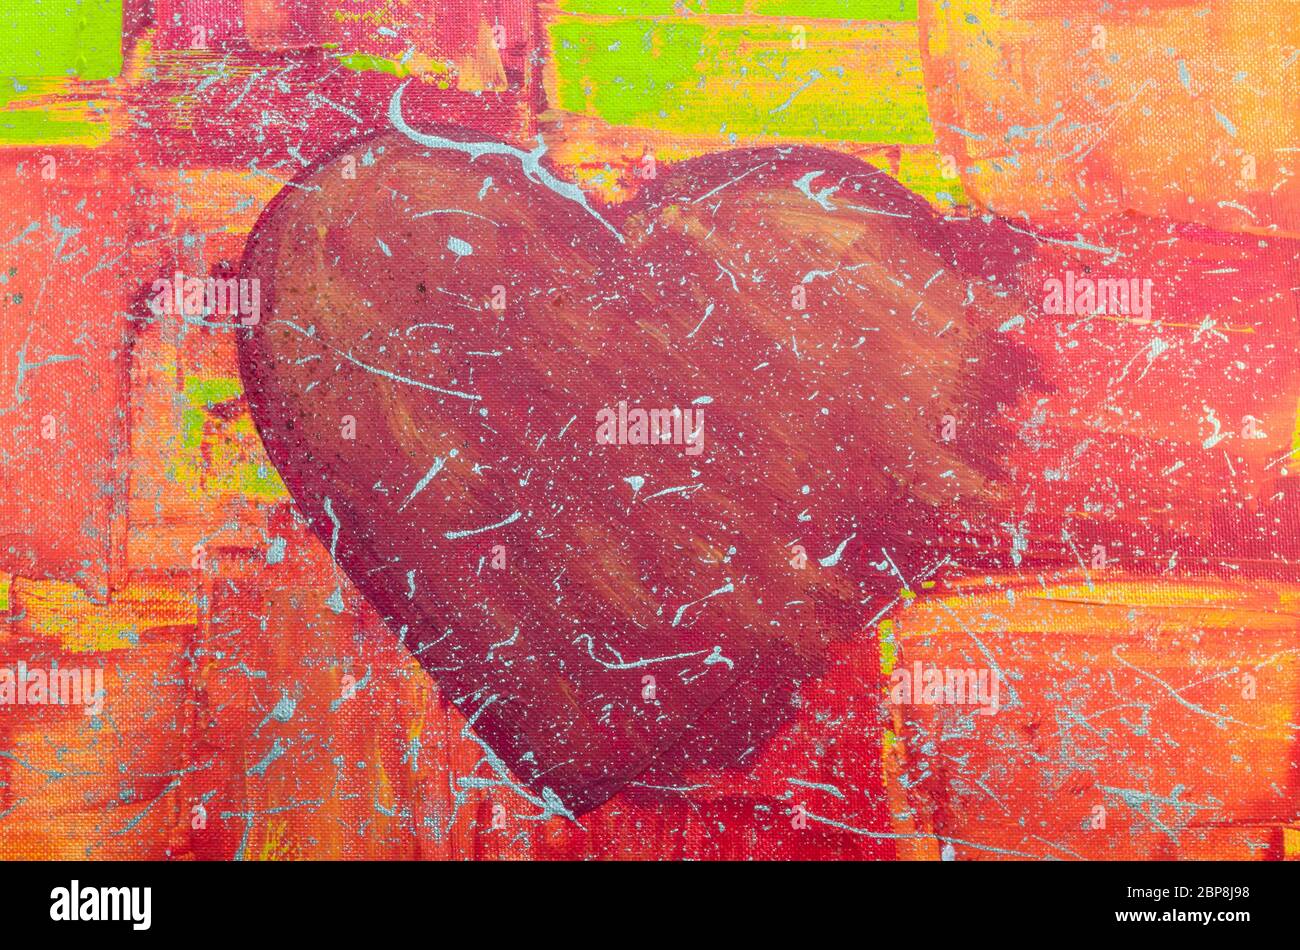 Acrylmalerei von unserer Tochter. Handgemaltes  großes rote Herz mit bunten Hintergrund. Stock Photo